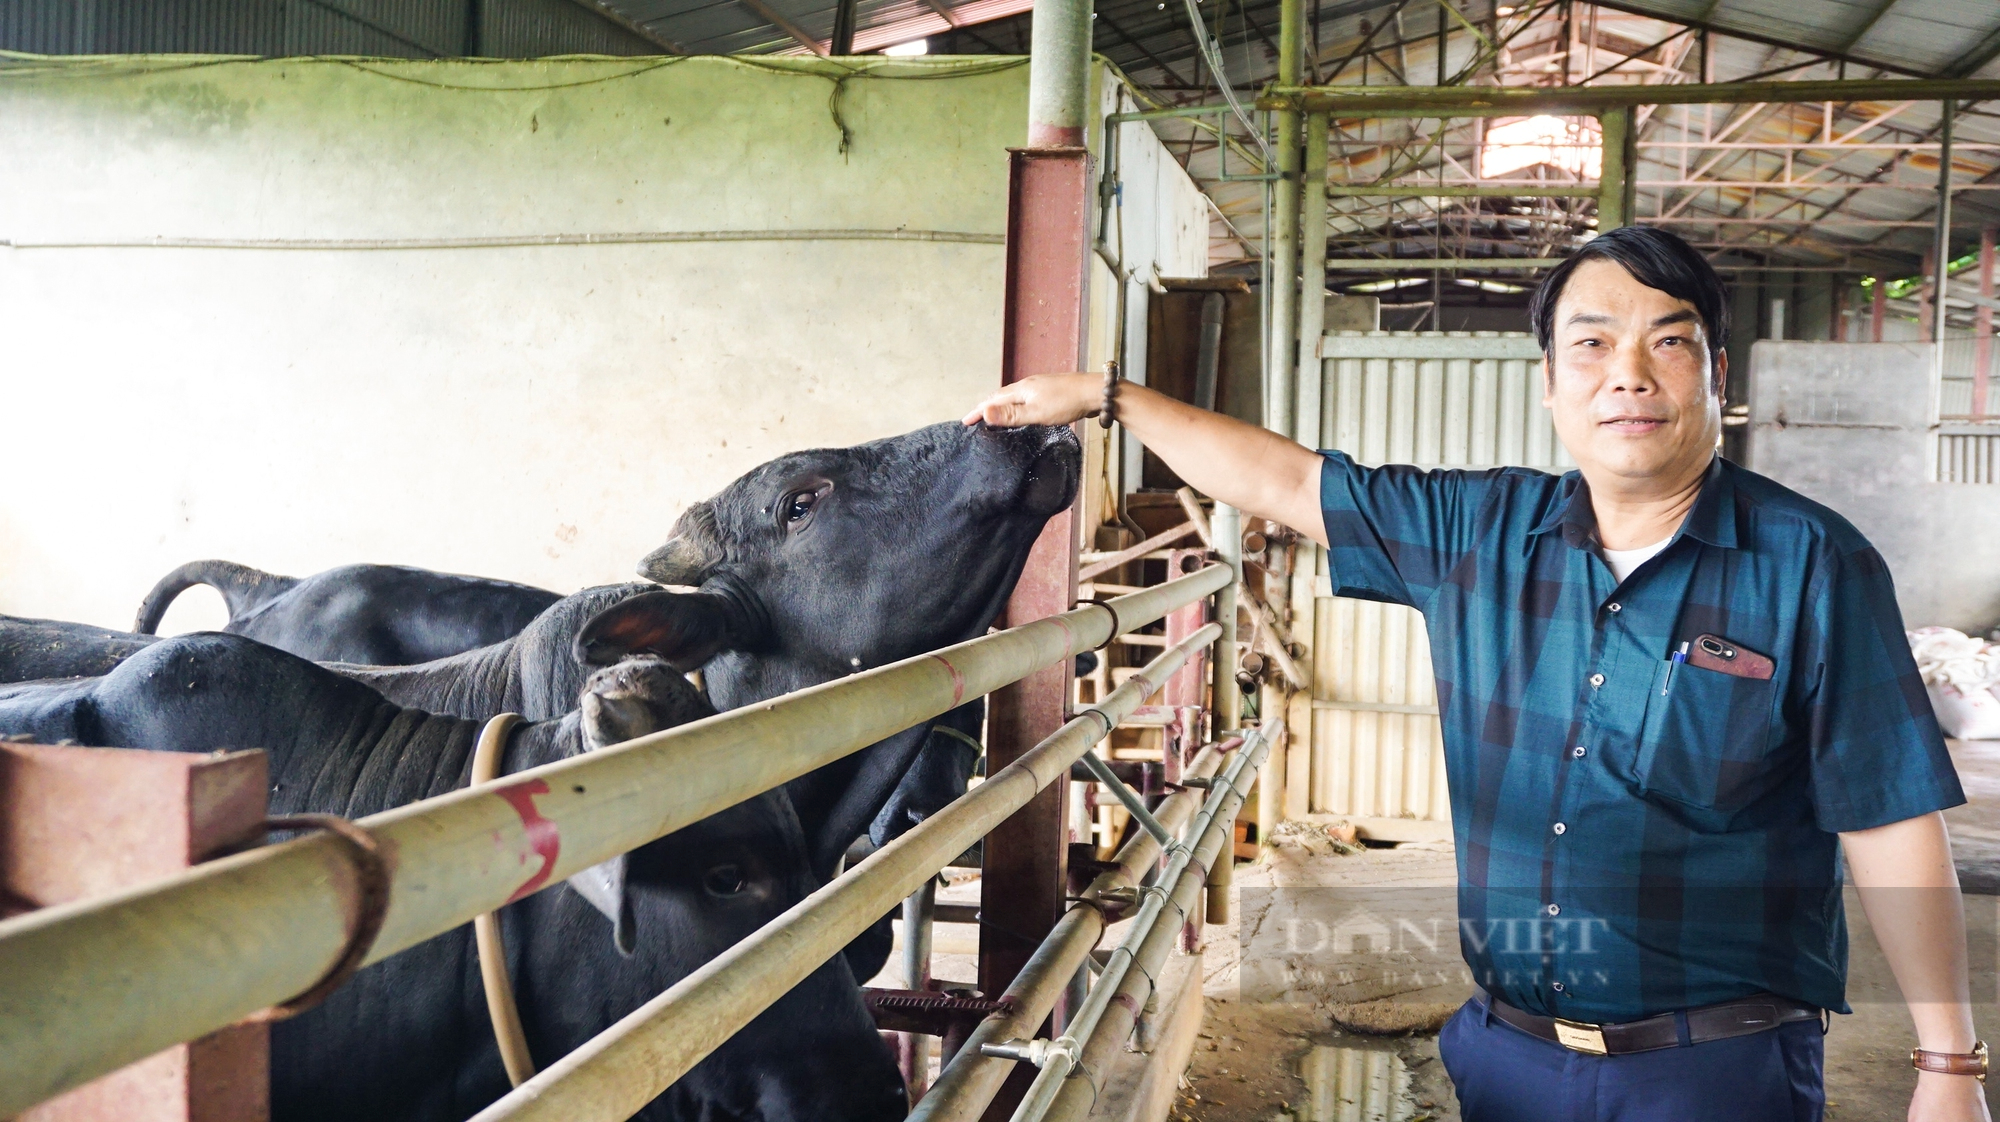 Nông dân Việt Nam xuất sắc 2022 đến từ Hà Nội là tỷ phú nuôi bò 1.000 con, doanh thu 65 tỷ đồng/năm - Ảnh 3.